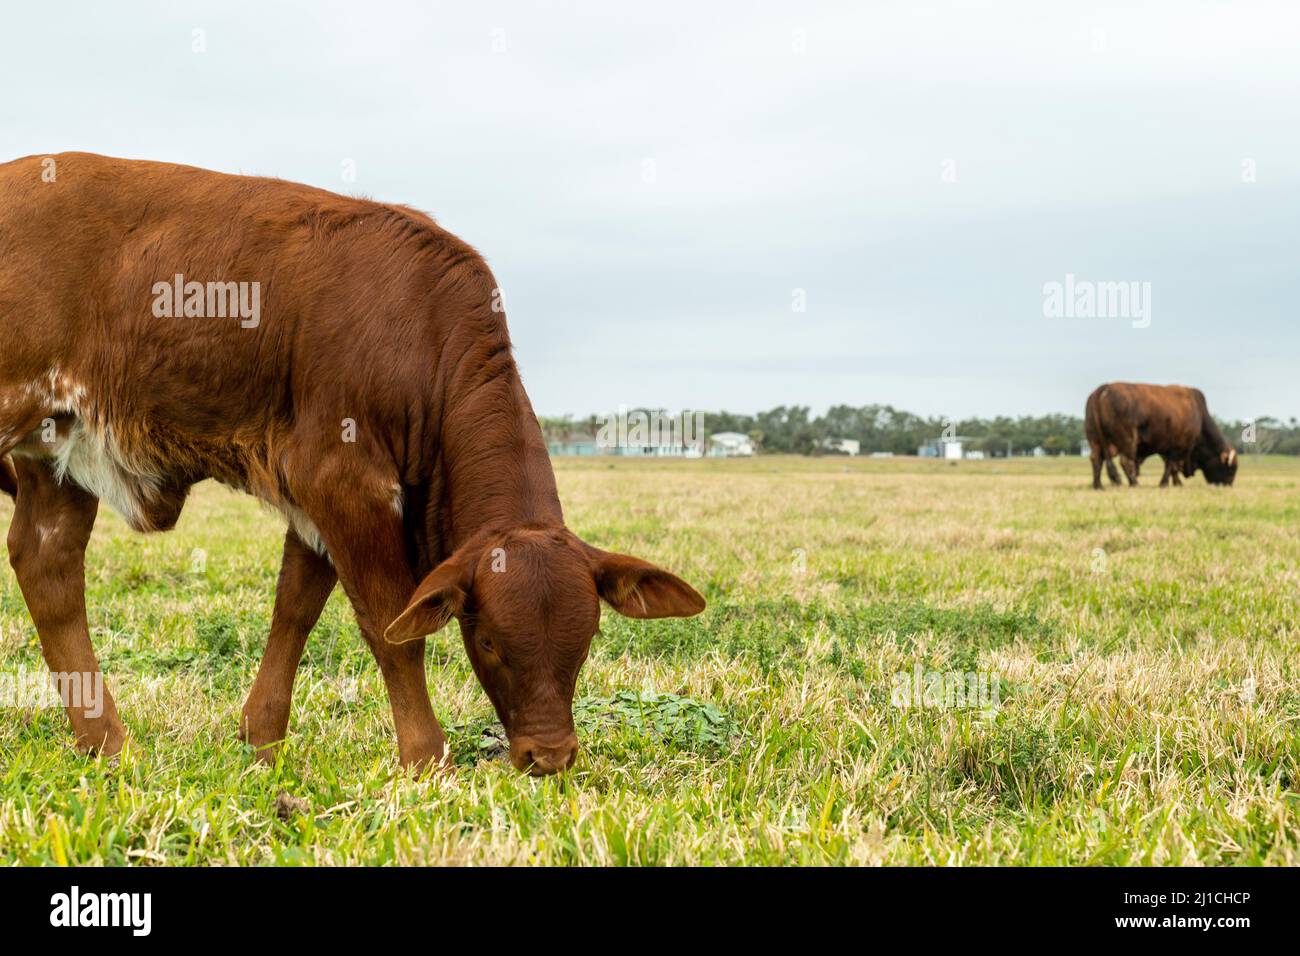 Bétail de boeuf bétail veau manger de l'herbe dans le pâturage un jour nuageux, avec la vache adulte dans la distance. Concept agricole et agricole. Banque D'Images